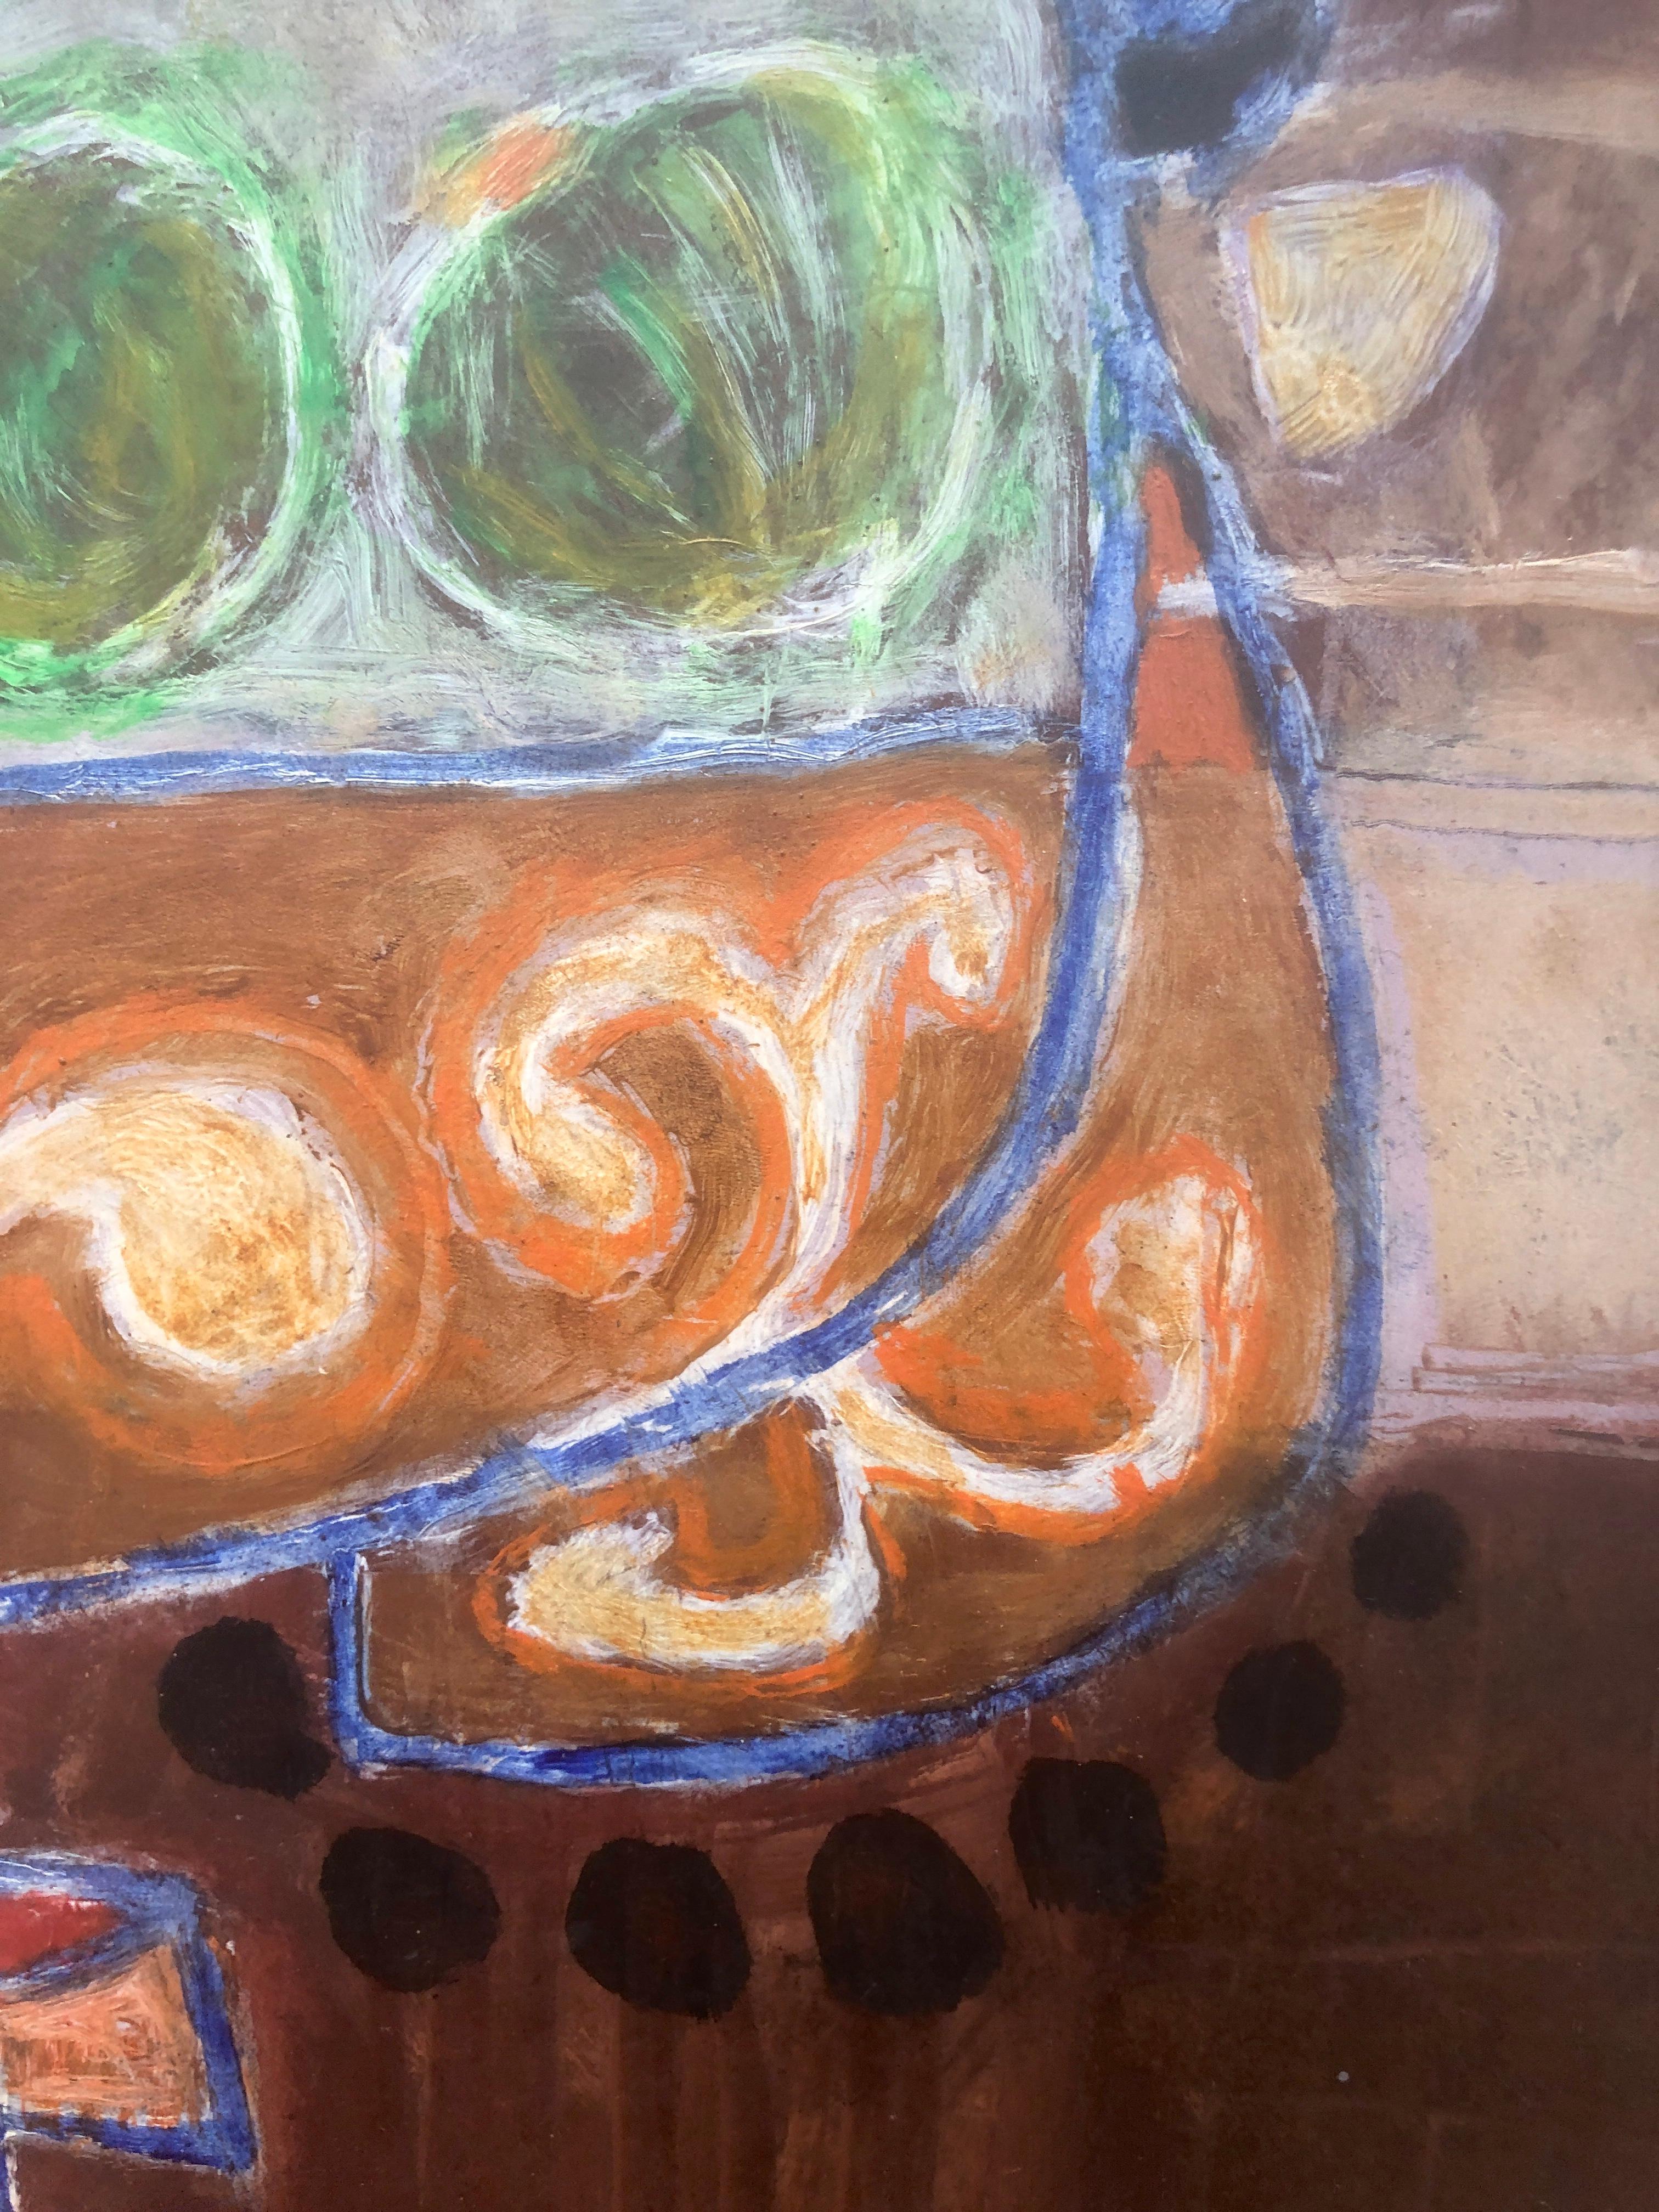 Gustavo Úbeda (1930-1994) - kubistische Komposition - Öltafel
Maße in Öl 50x42 cm.
Maße des Rahmens 58x50 cm.

Das Gemälde von Gustavo Úbeda Romero (Herencia, 1930 - Sao Paulo, 1994) stammt aus einer Familie von Malern, die durch Ästhetik und